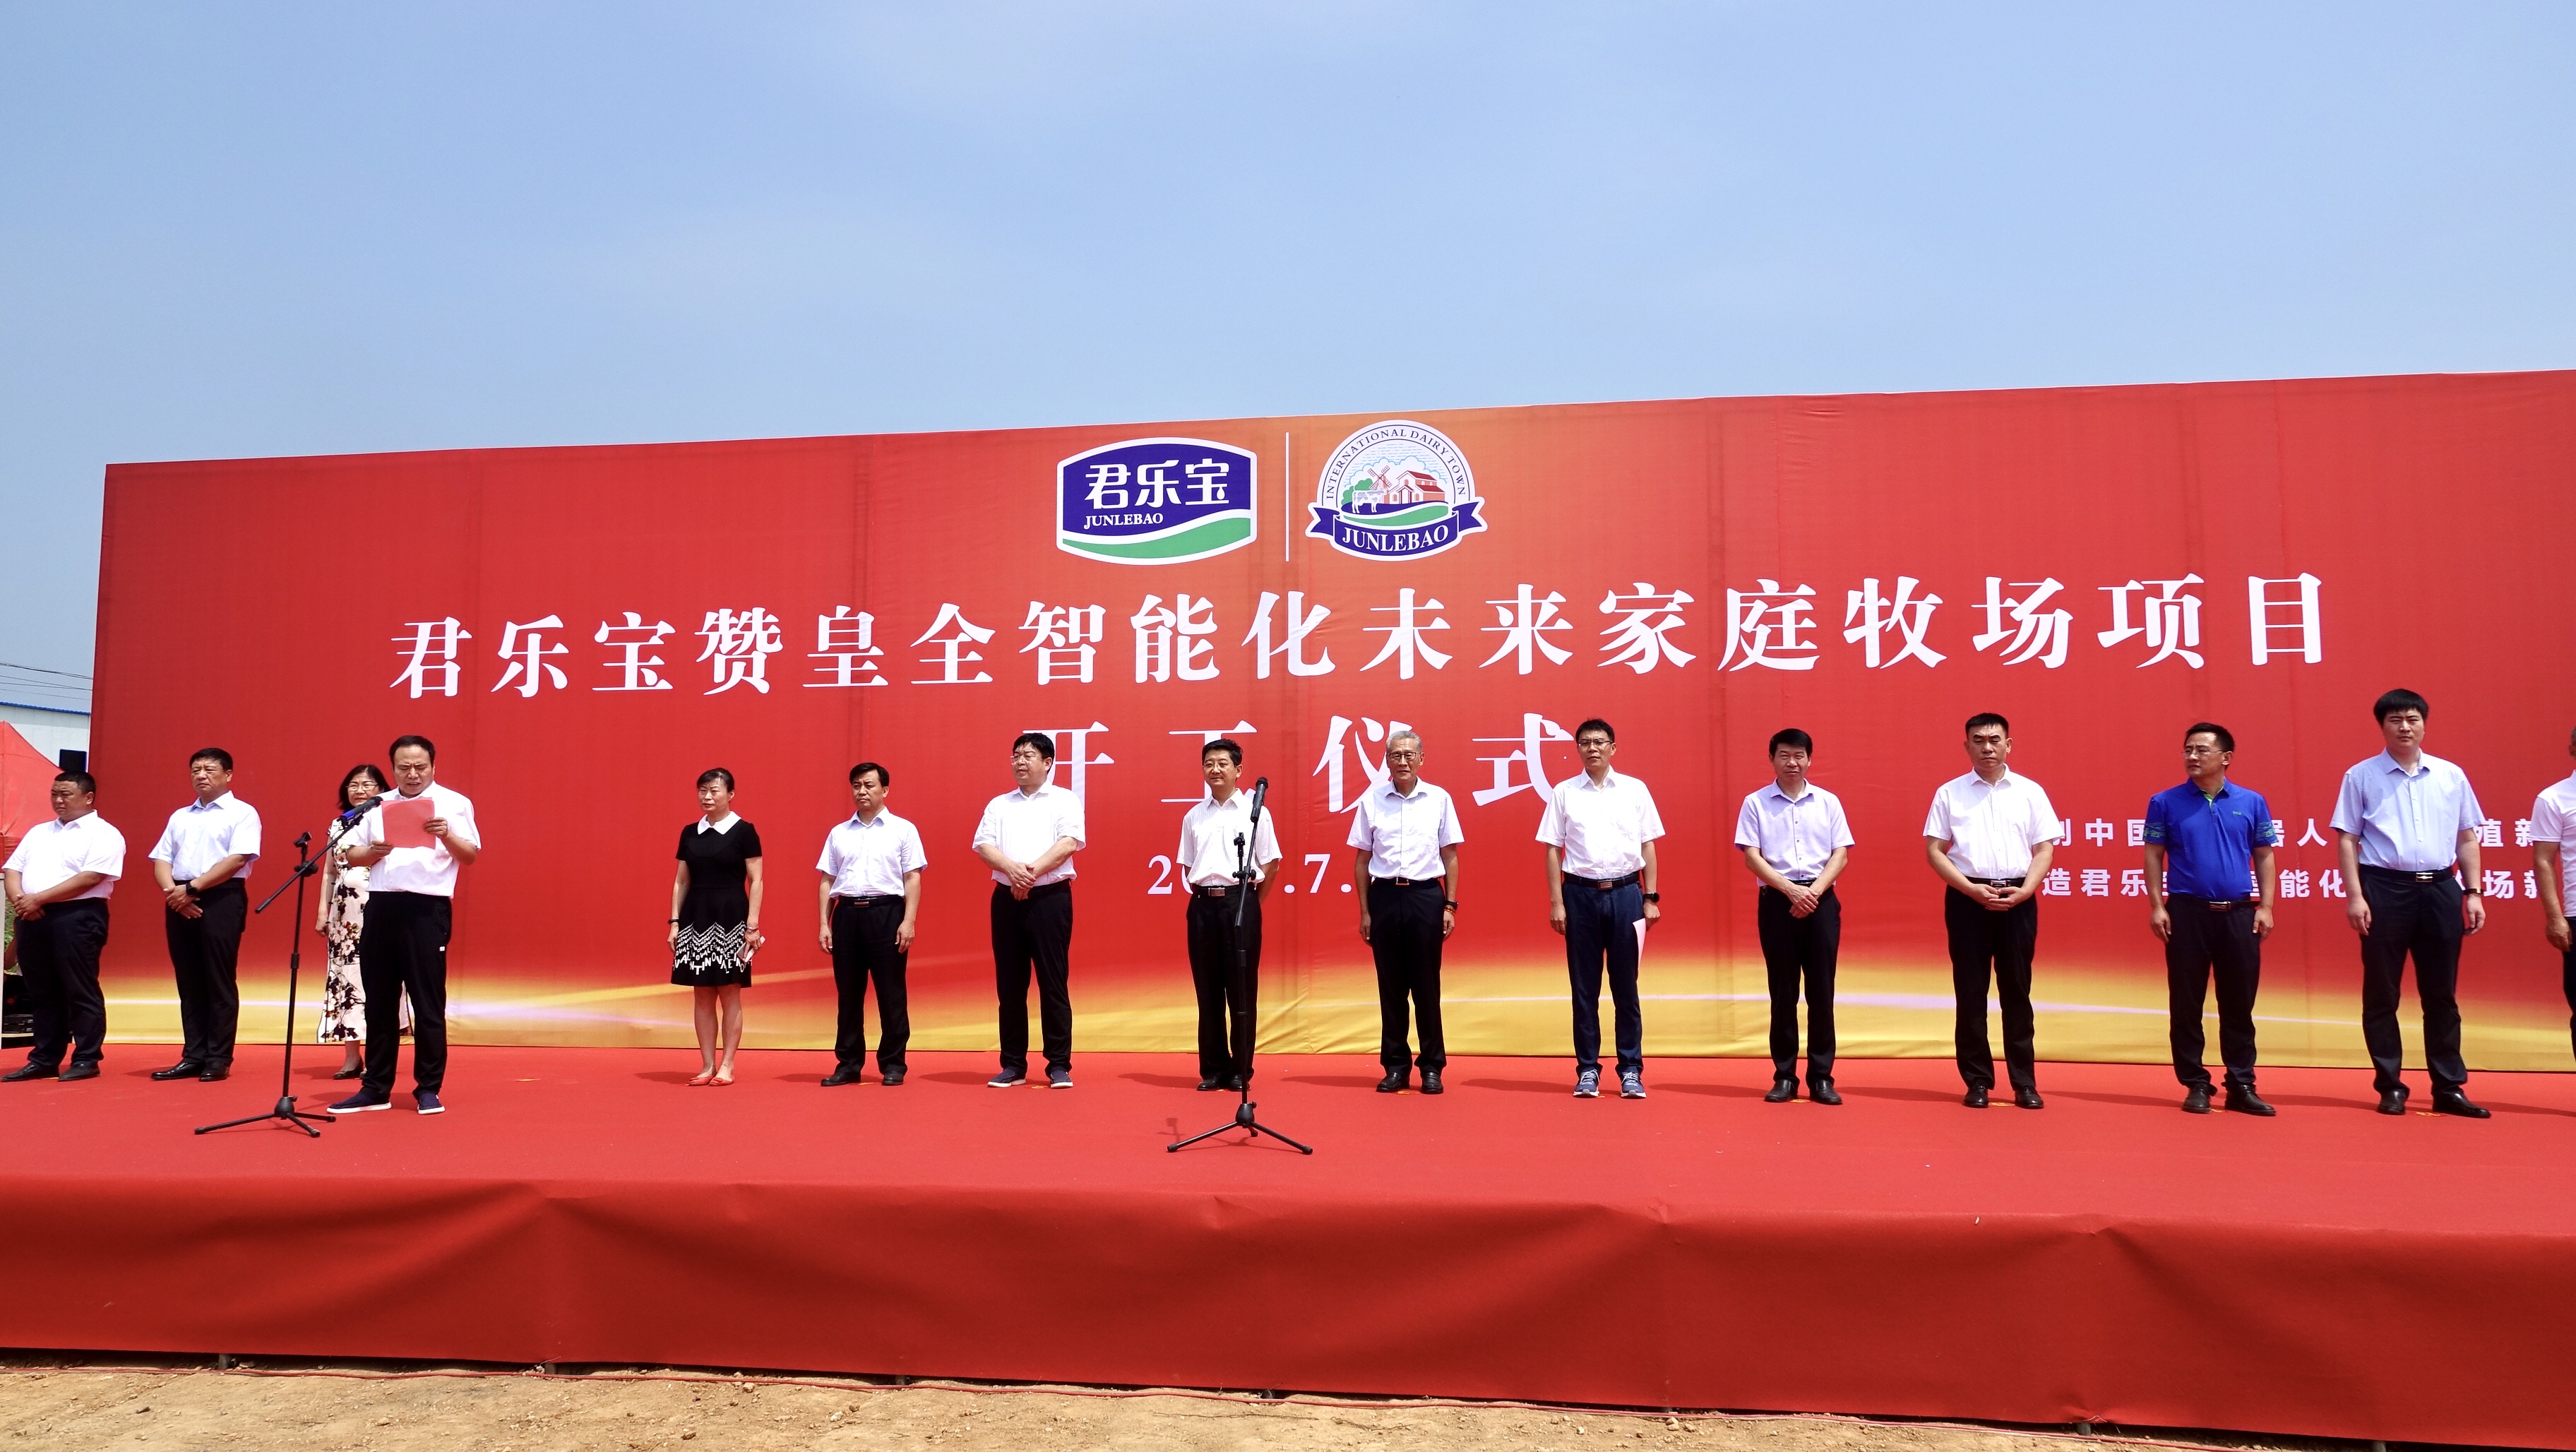 产经在邢台威县,君乐宝规划投资40亿元建设5个万头牧场,1个乳品深加工